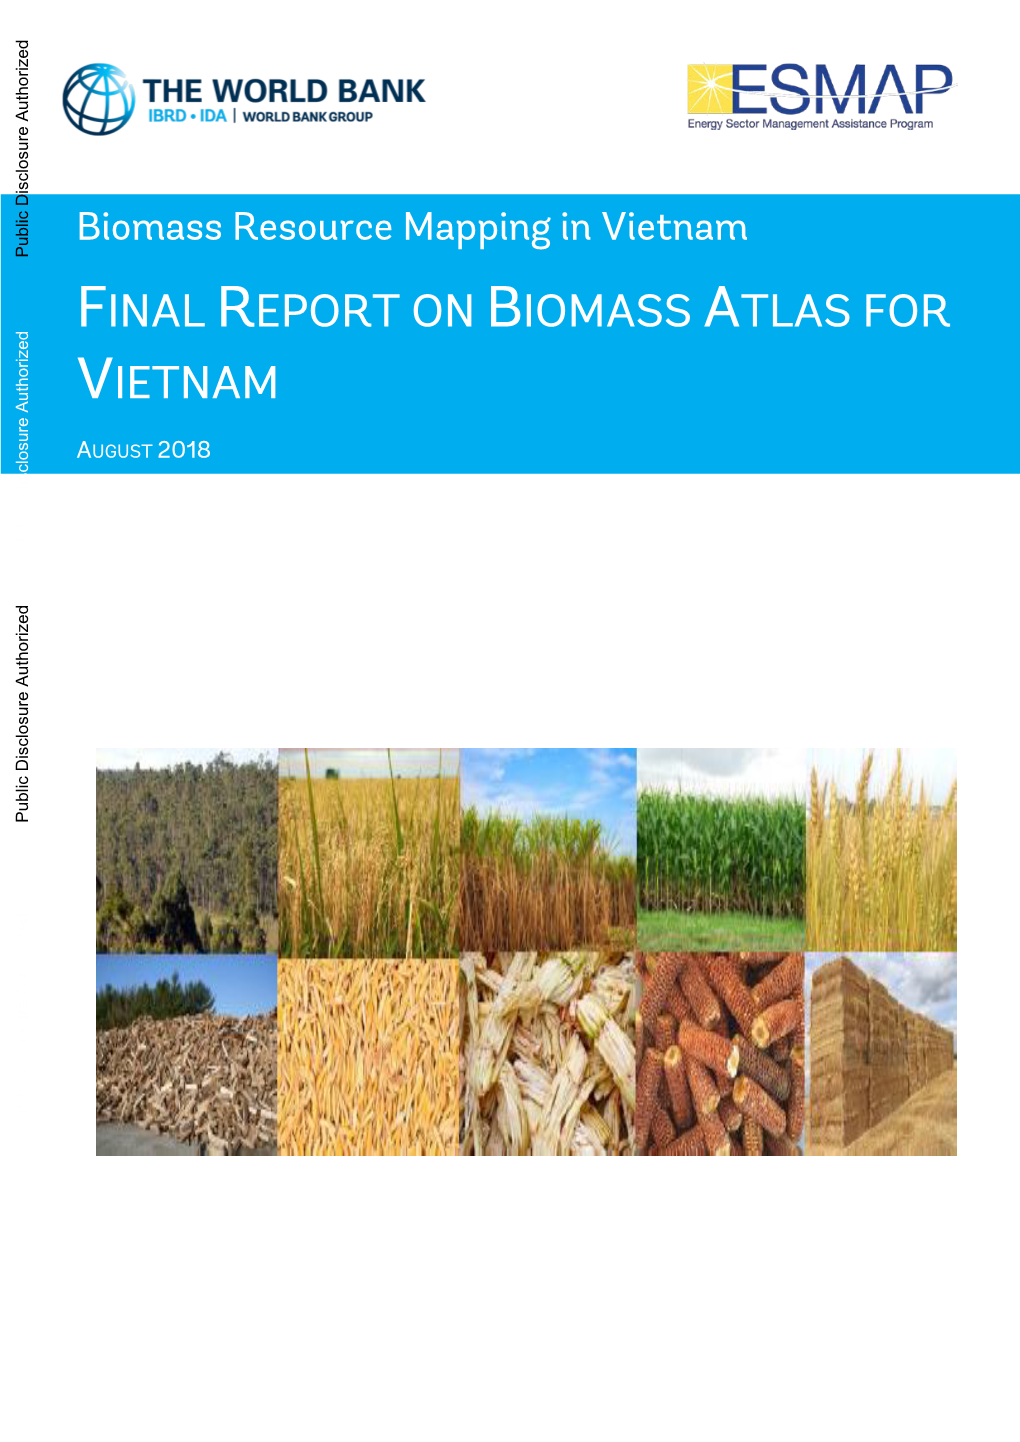 Final Report on Biomass Atlas for Vietnam